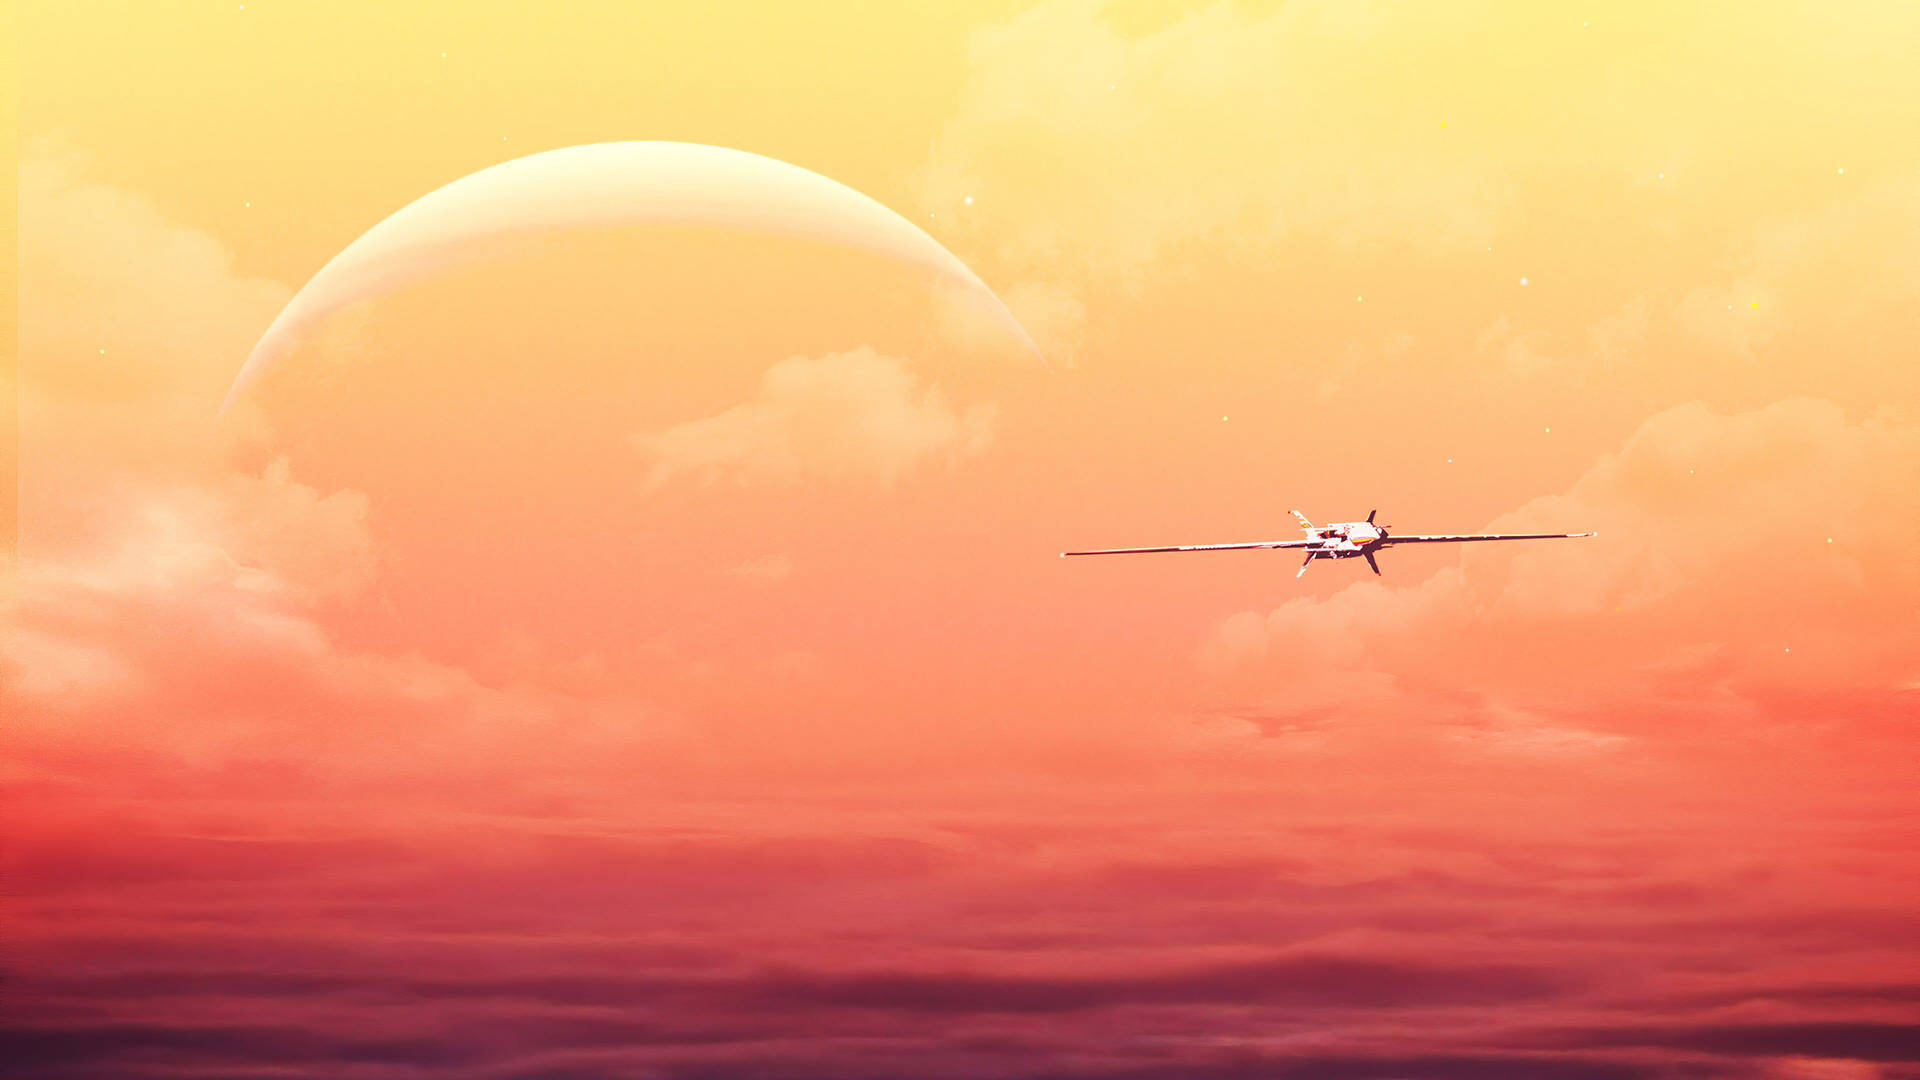 4k Plane And Orange Sky